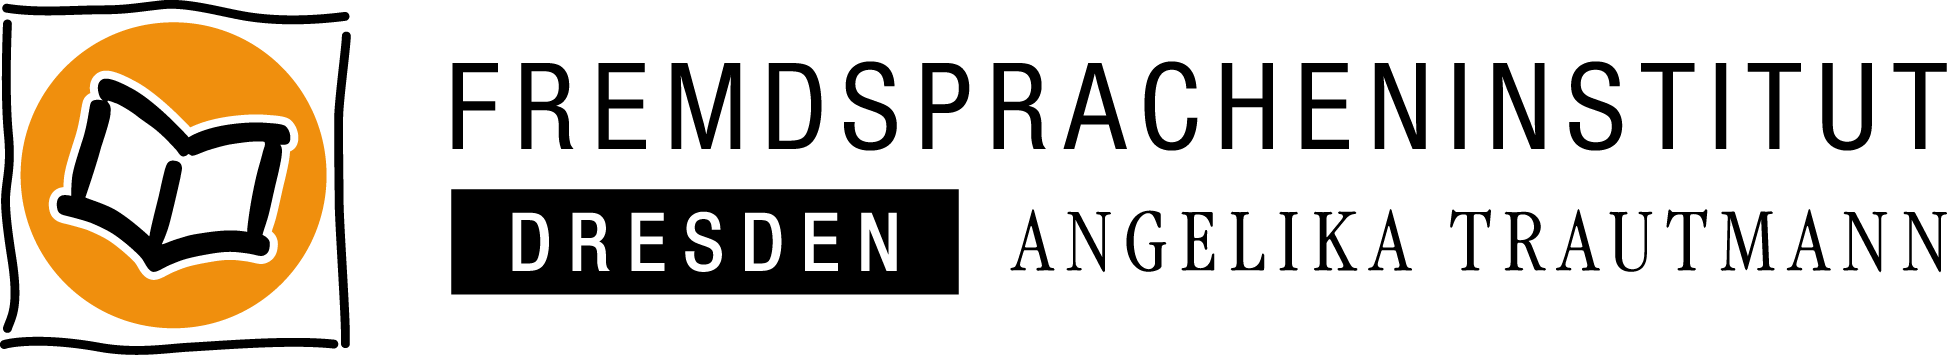 Fremdspracheninstitut Dresden Logo